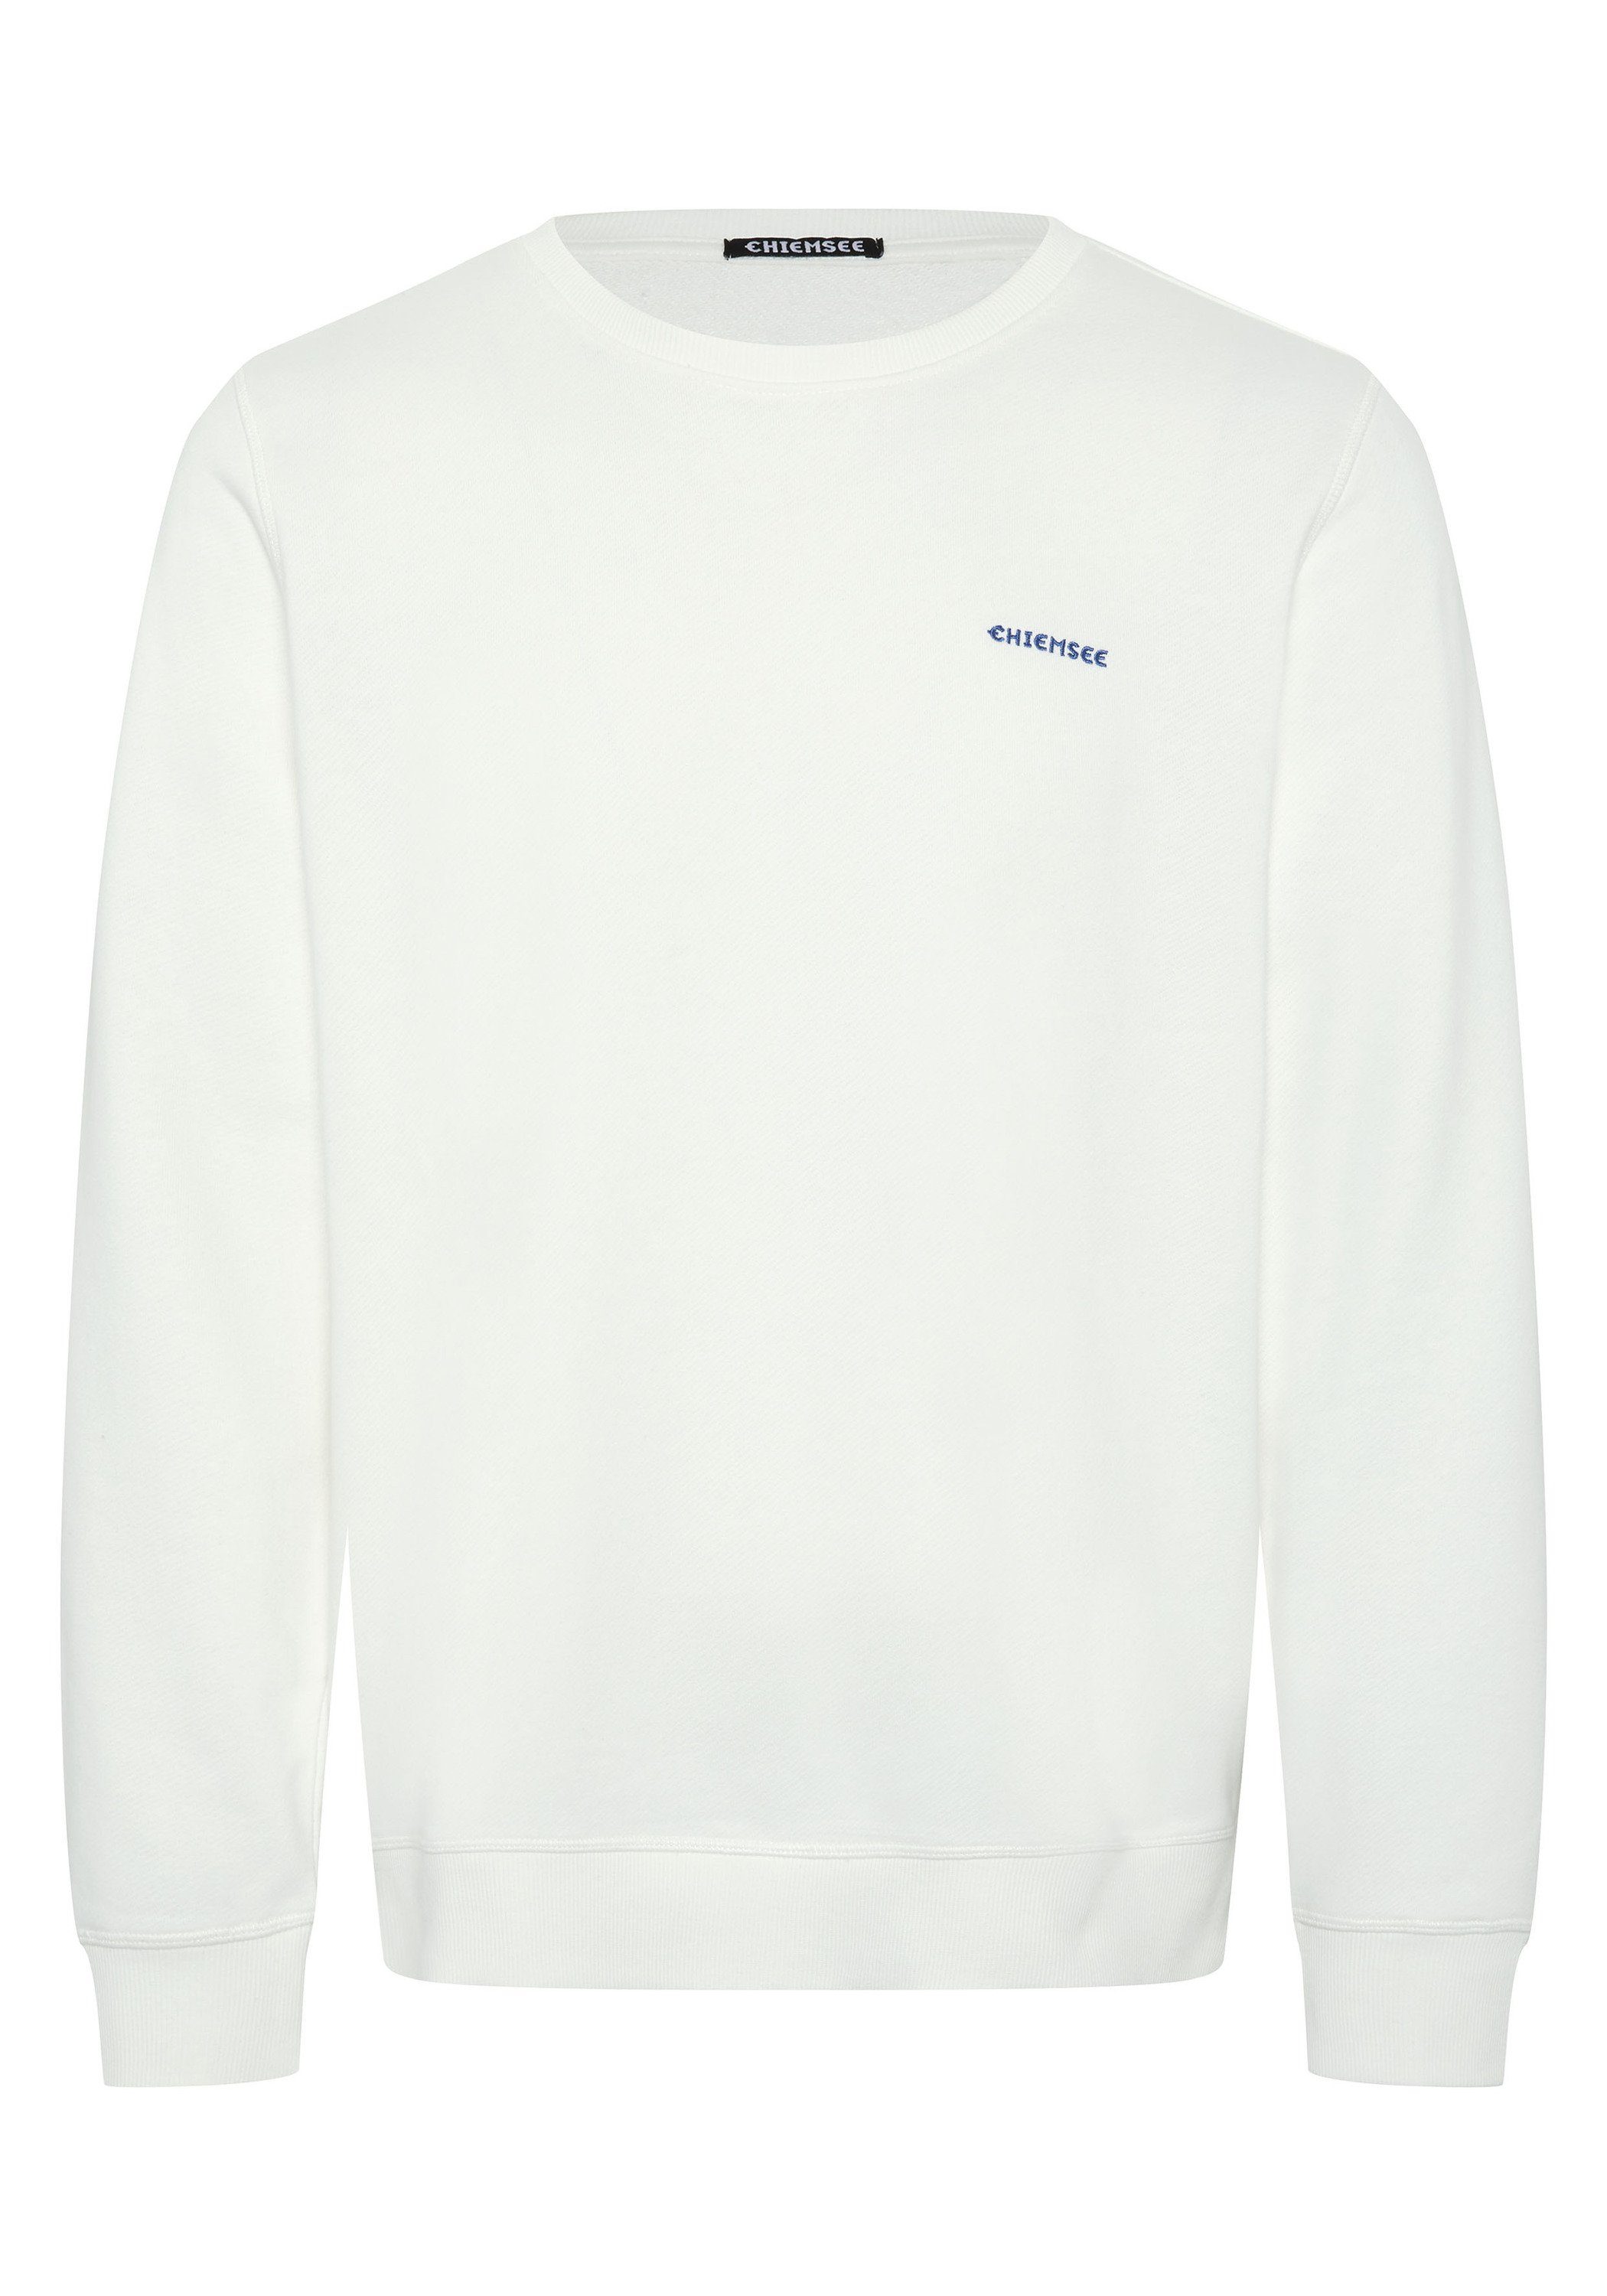 Sweatshirt mit Star 11-4202 1 Chiemsee Jumper-Motiv Sweater White